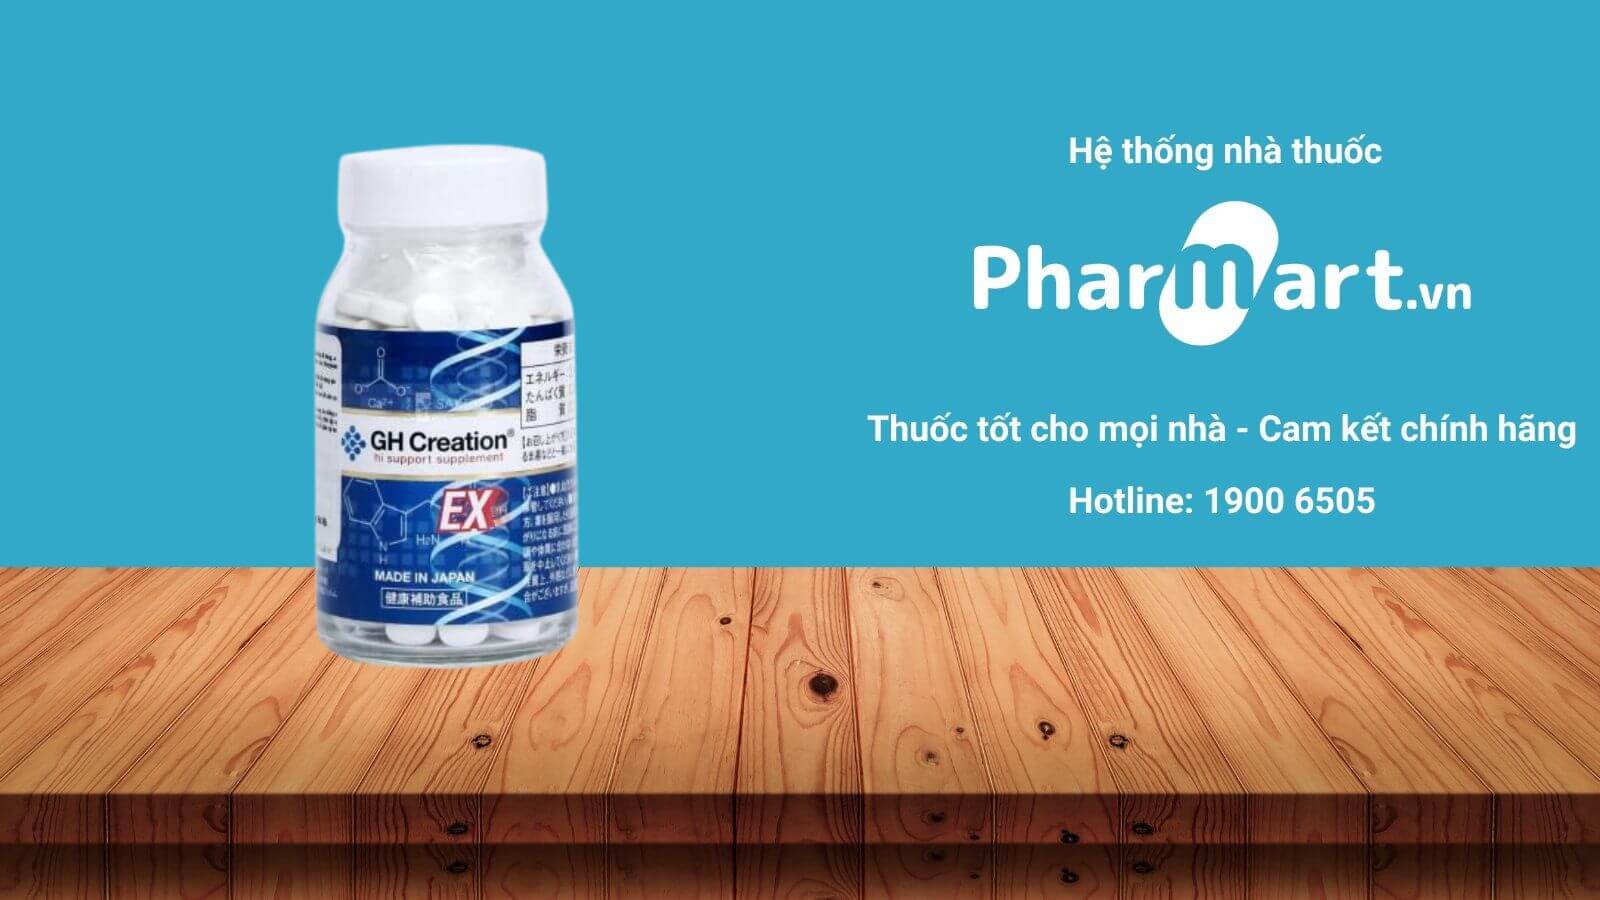 Liên hệ Pharmart.vn nhằm đáp ứng mua sắm GH-Creation chủ yếu hãng